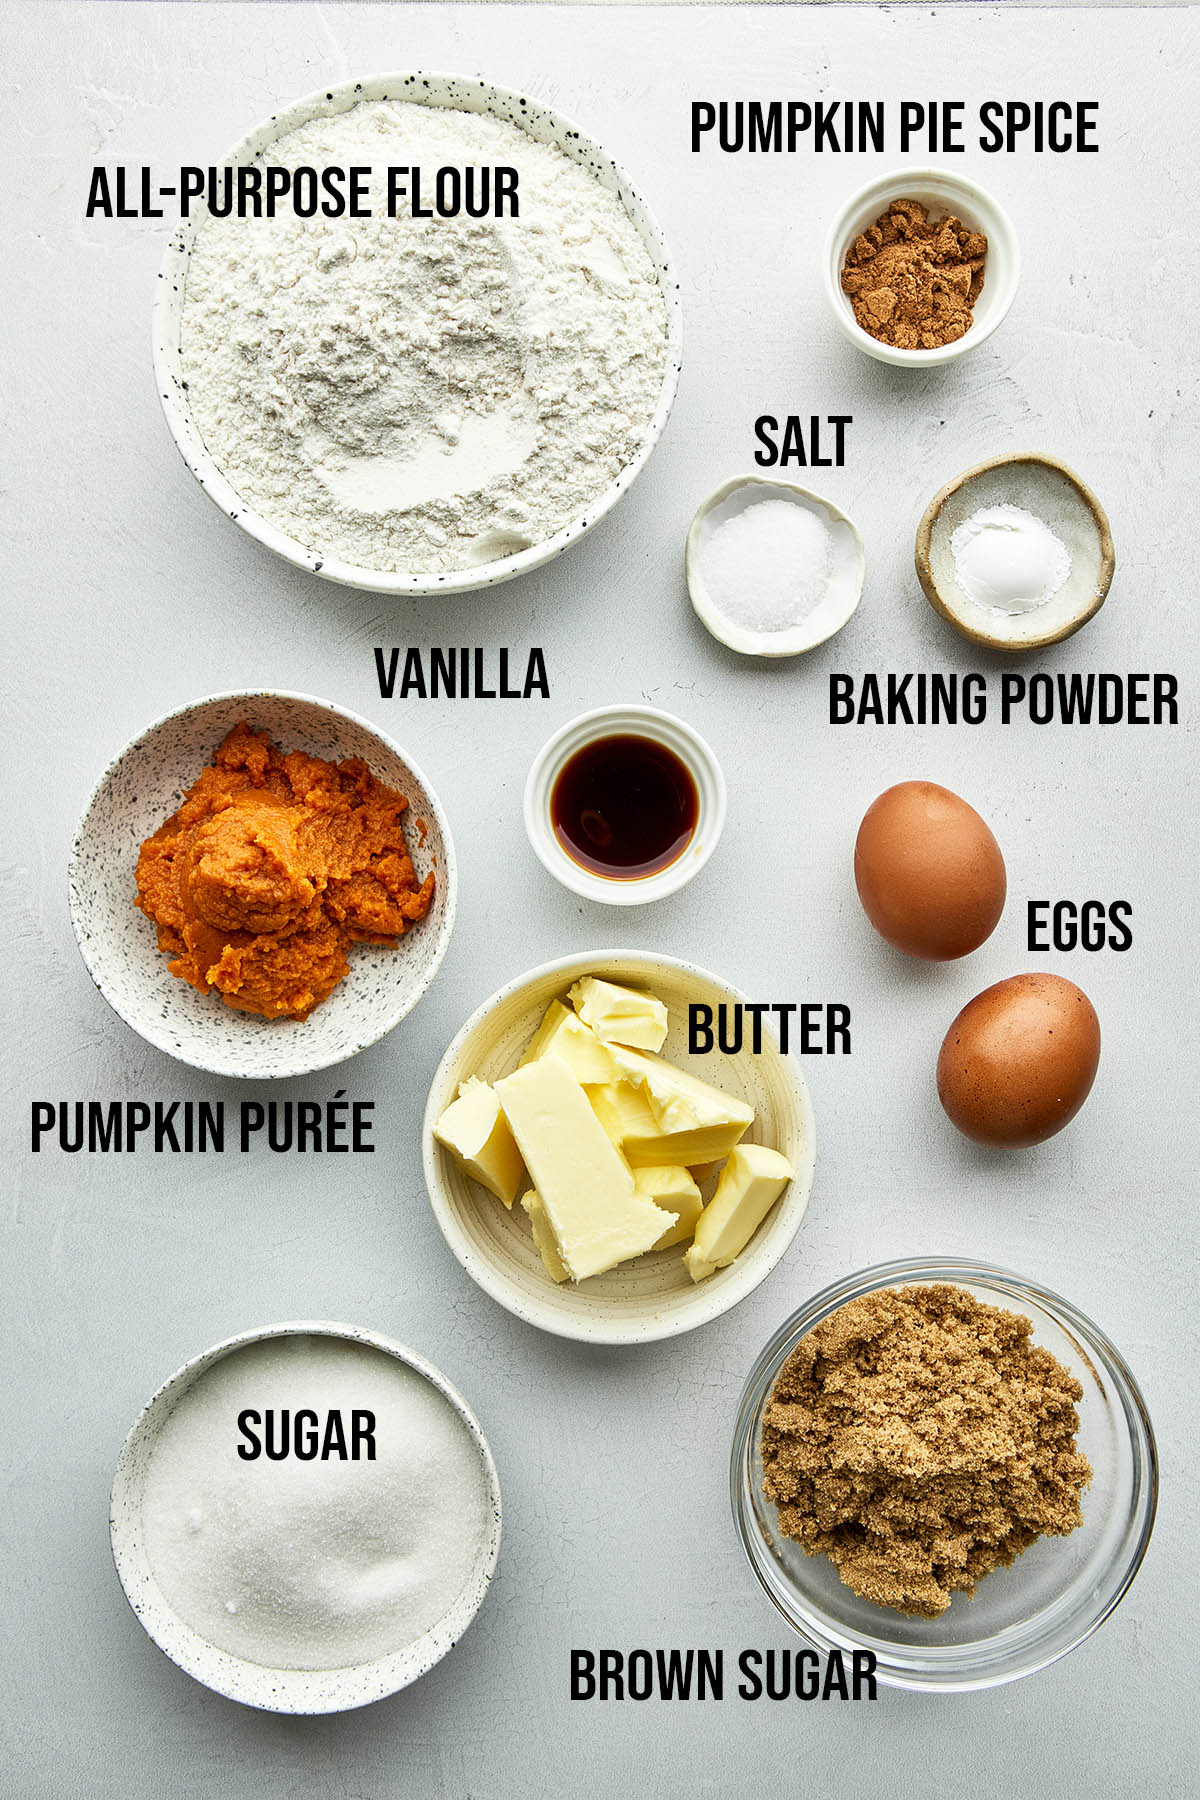 Ingredients to make this recipe.